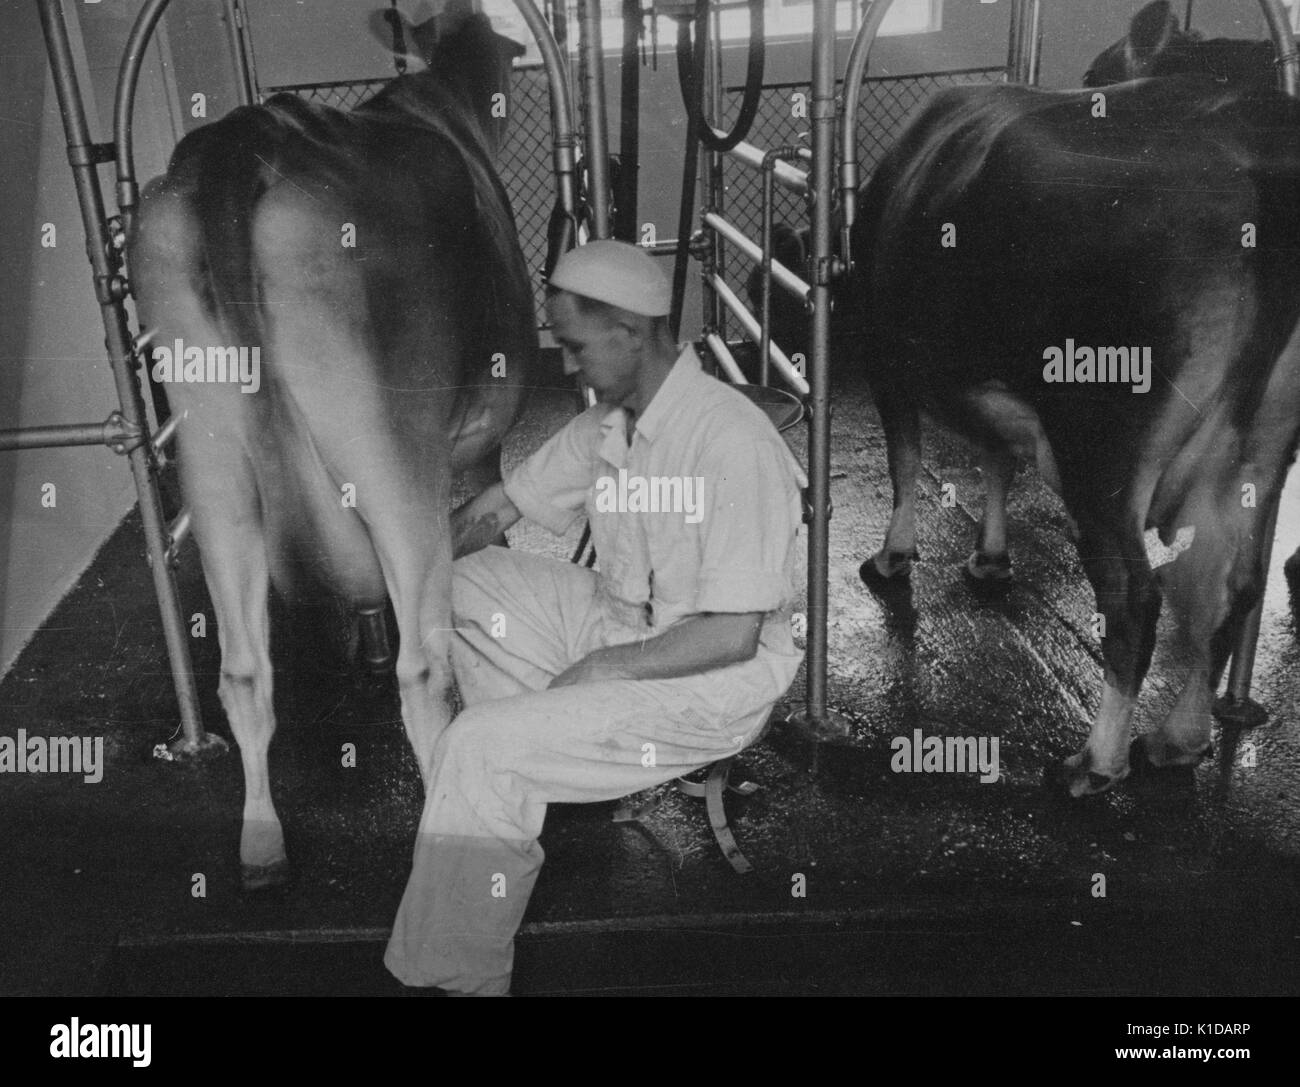 Arbeiter, der eine automatische Melkmaschine verwendet, um Kühe auf einem Bauernhof in Beltsville, Maryland, 1935 zu melken. Aus der New York Public Library. Stockfoto